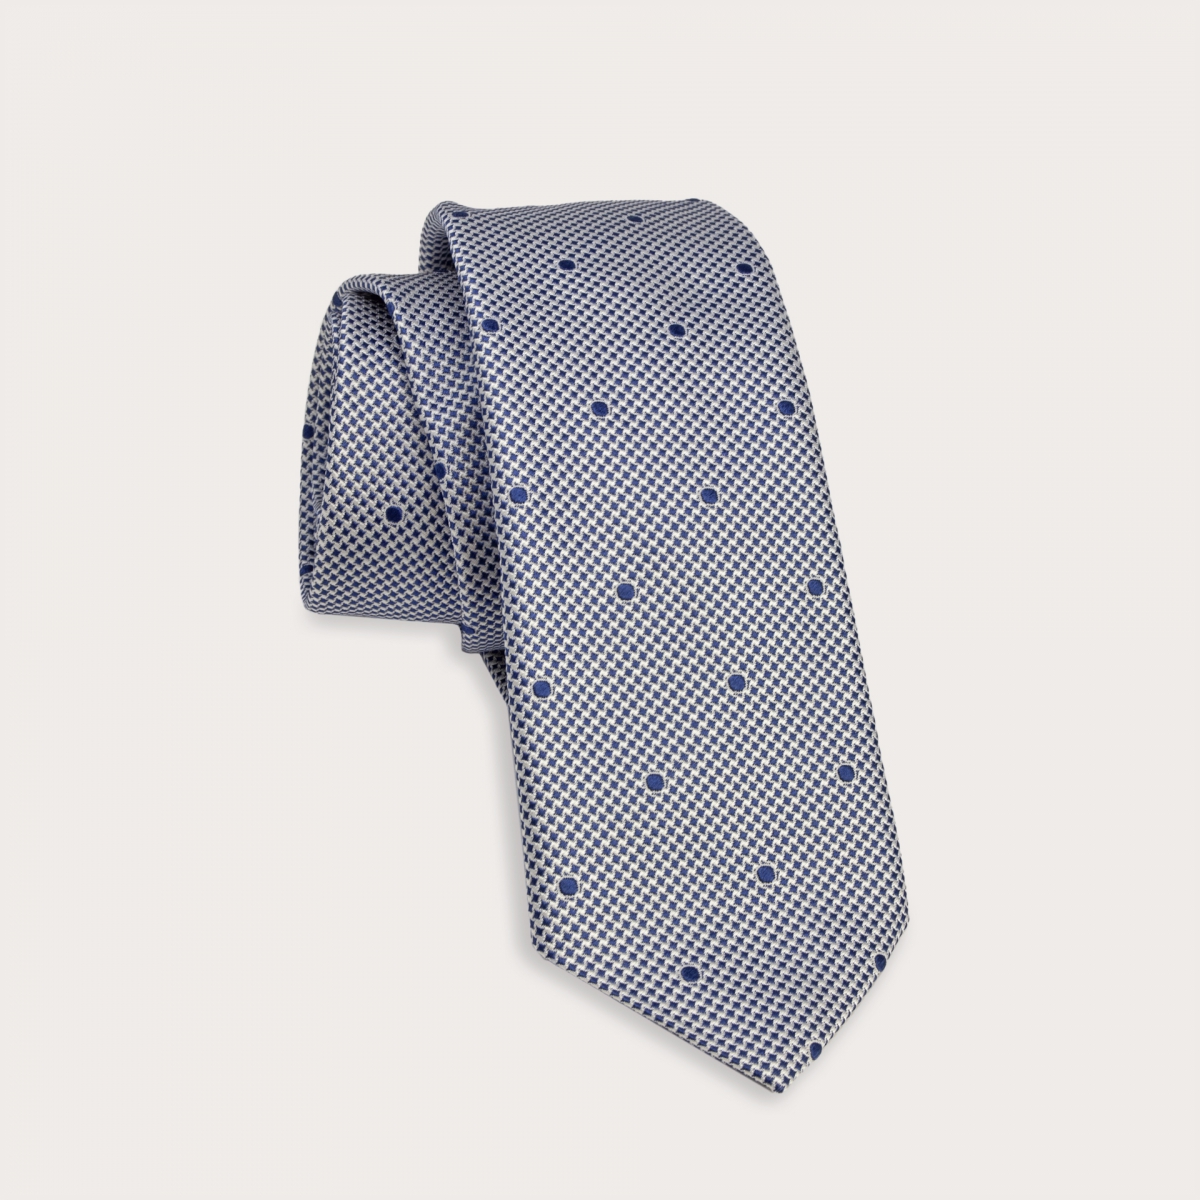 Cravate en soie jacquard, motif blanc et bleu